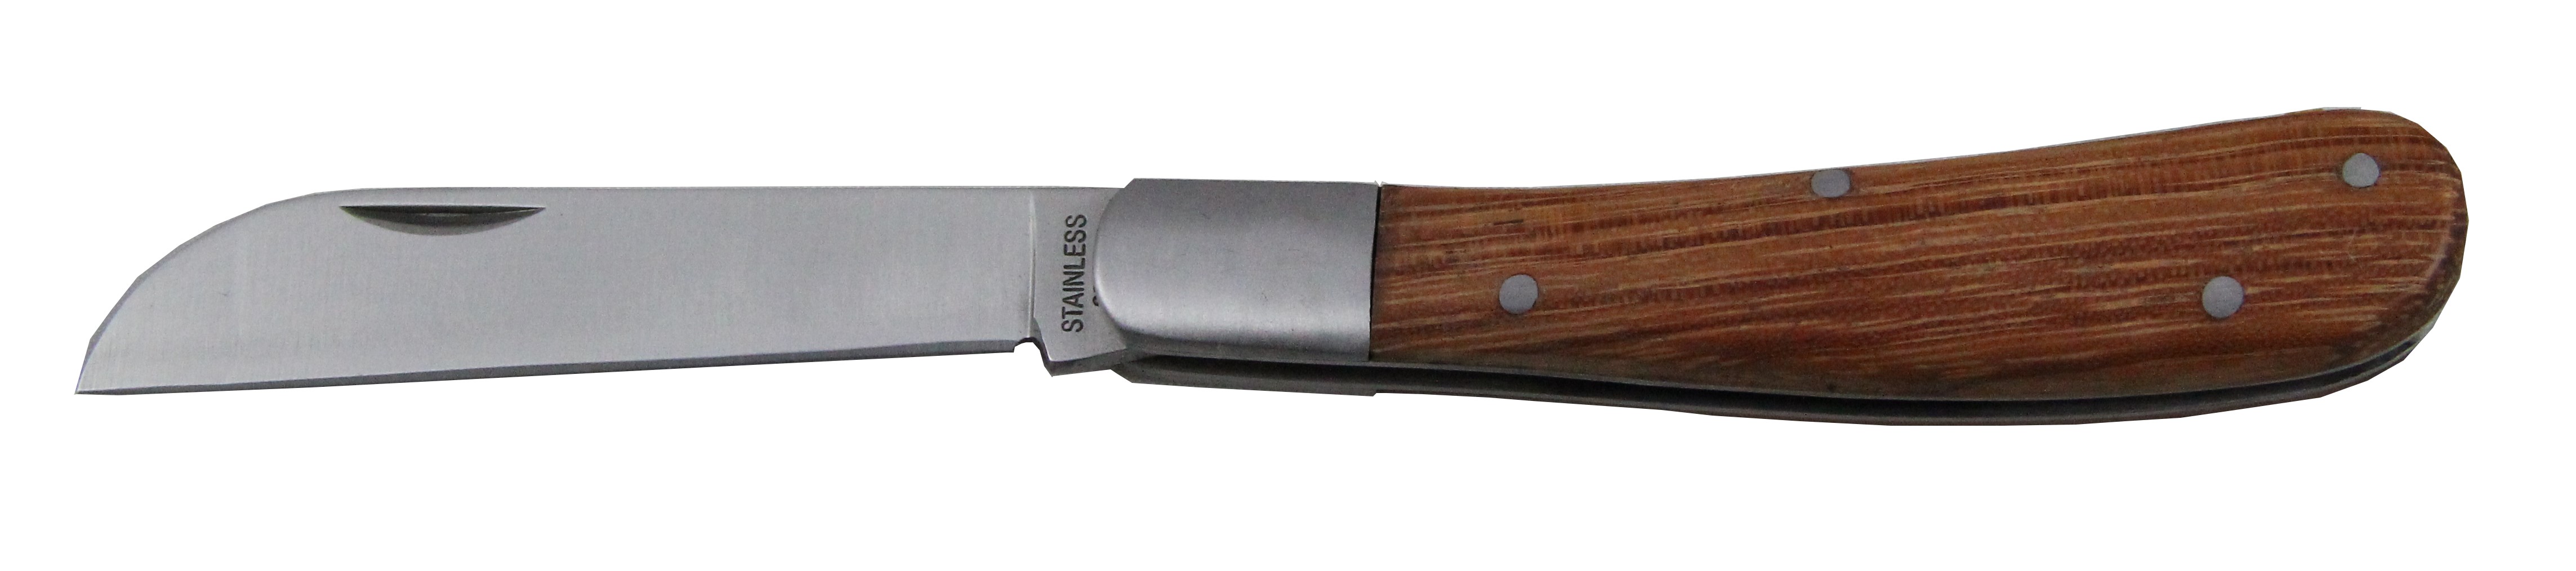 175mm Gardener Folding Knife